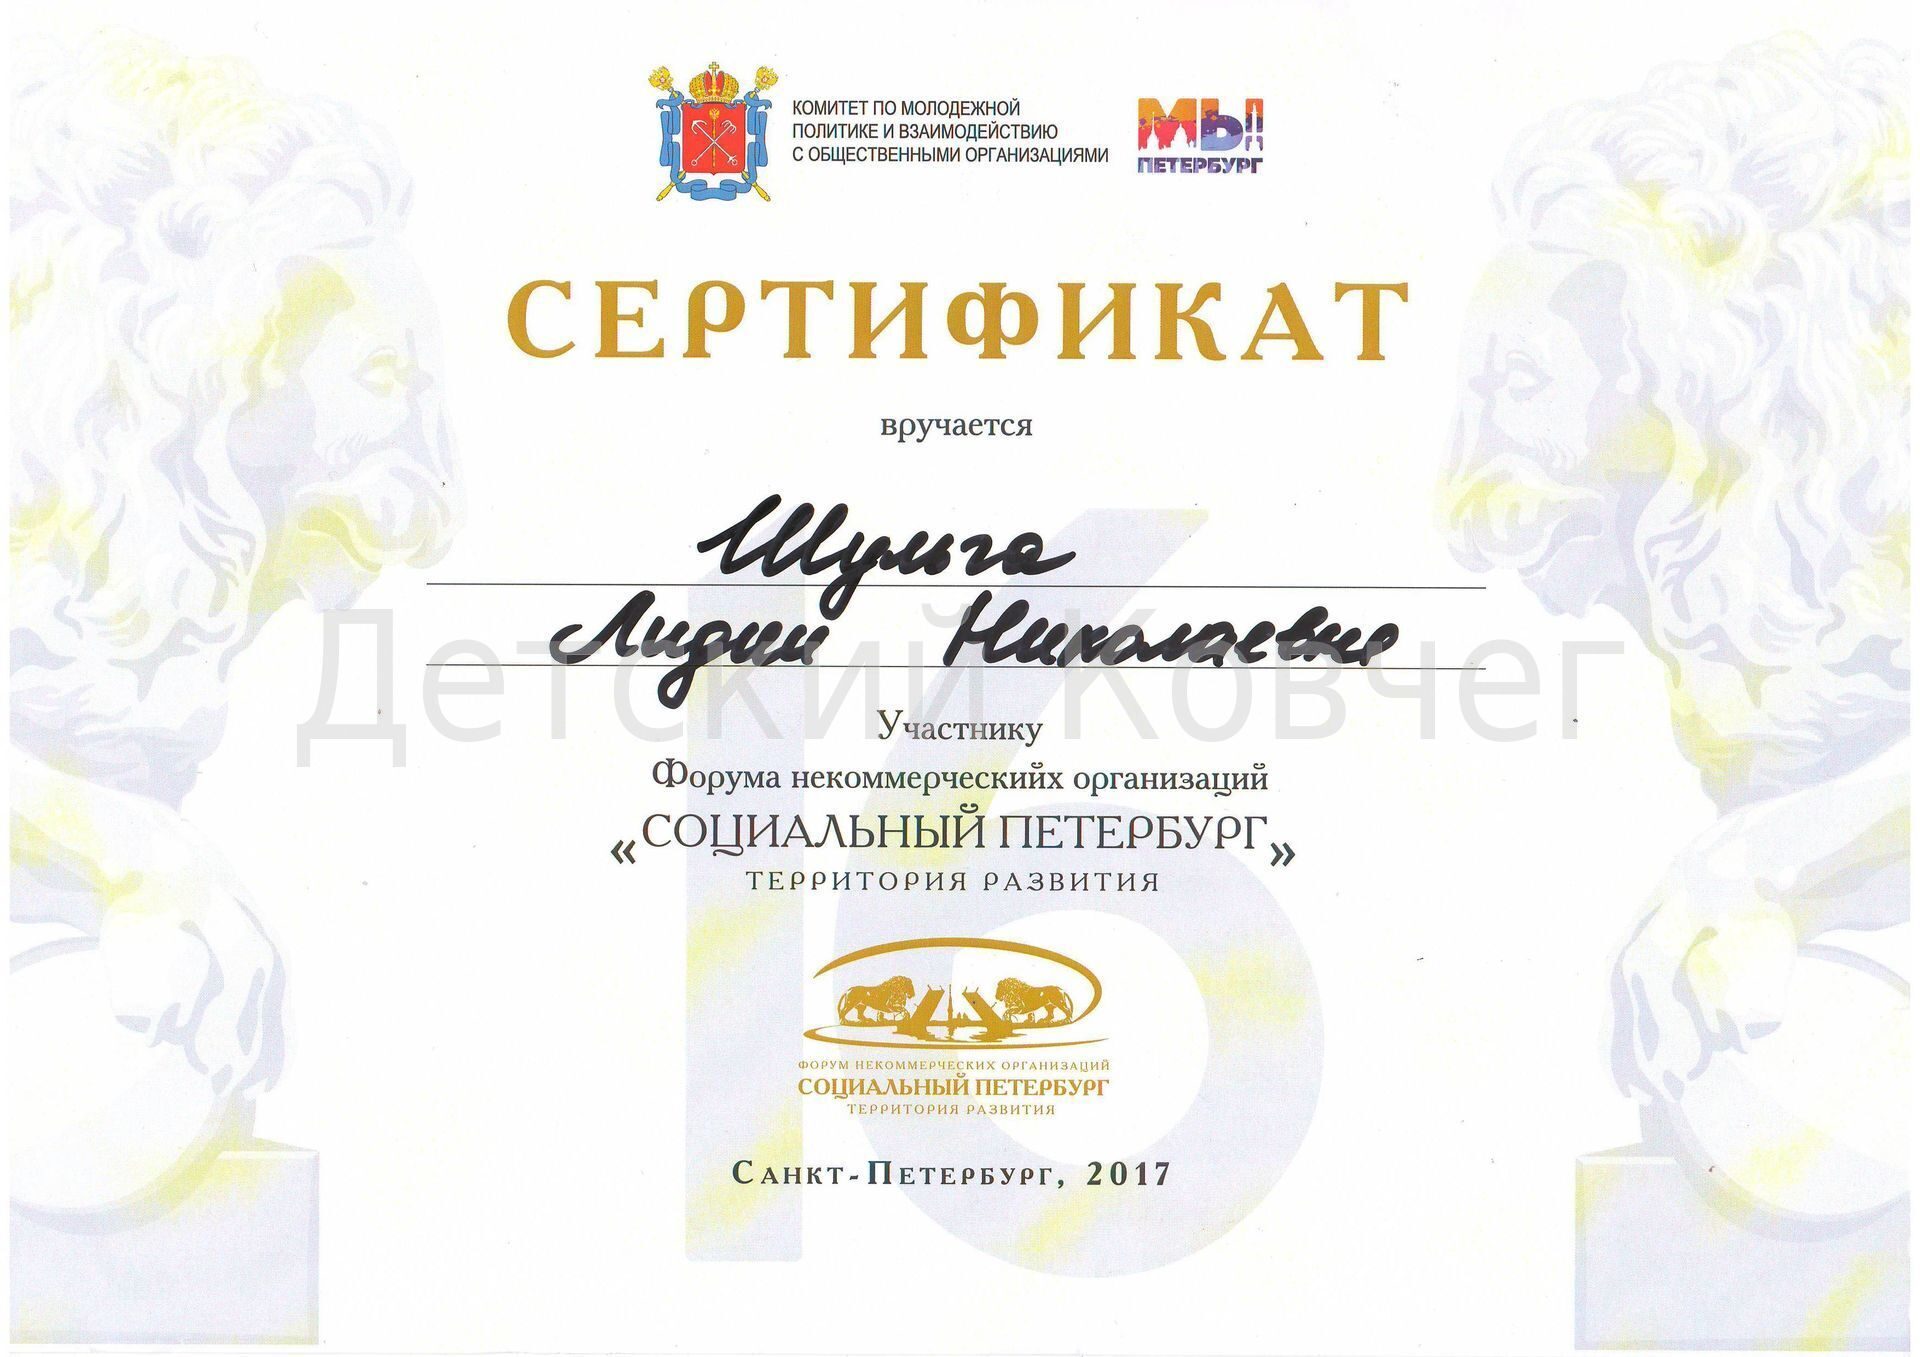 Сертификат об участии в Форуме НКО "Социальный Петербург" 2017г.